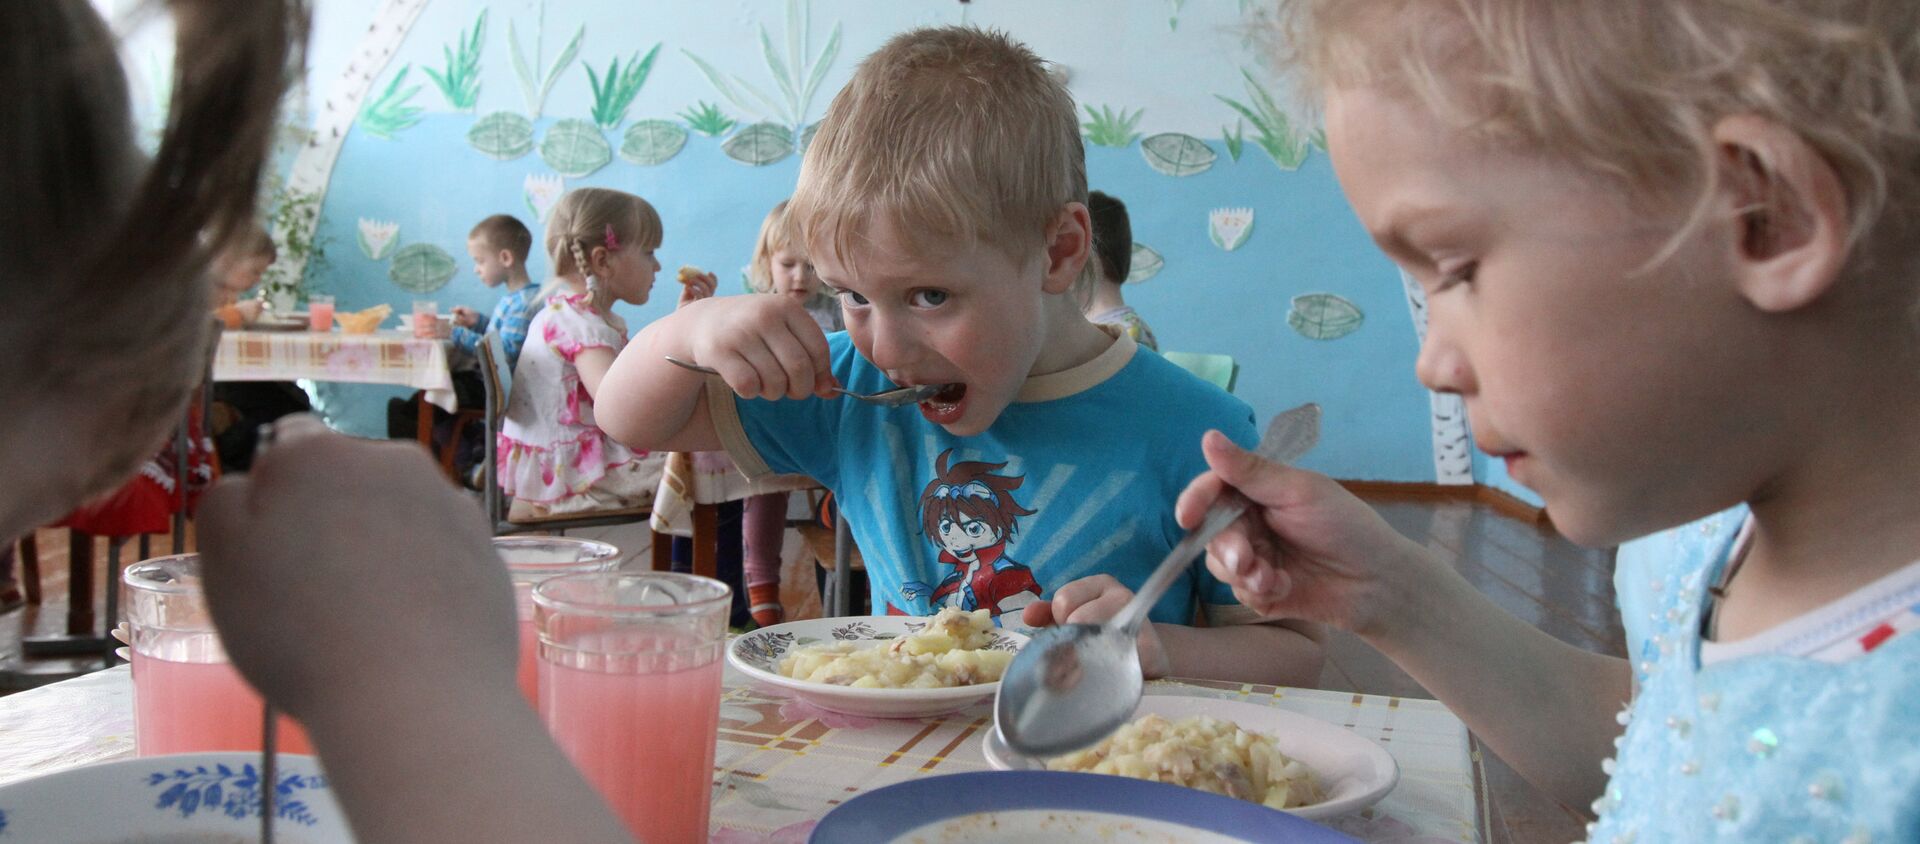 Архивное фото детей за обедом в детсаду - Sputnik Казахстан, 1920, 02.02.2019